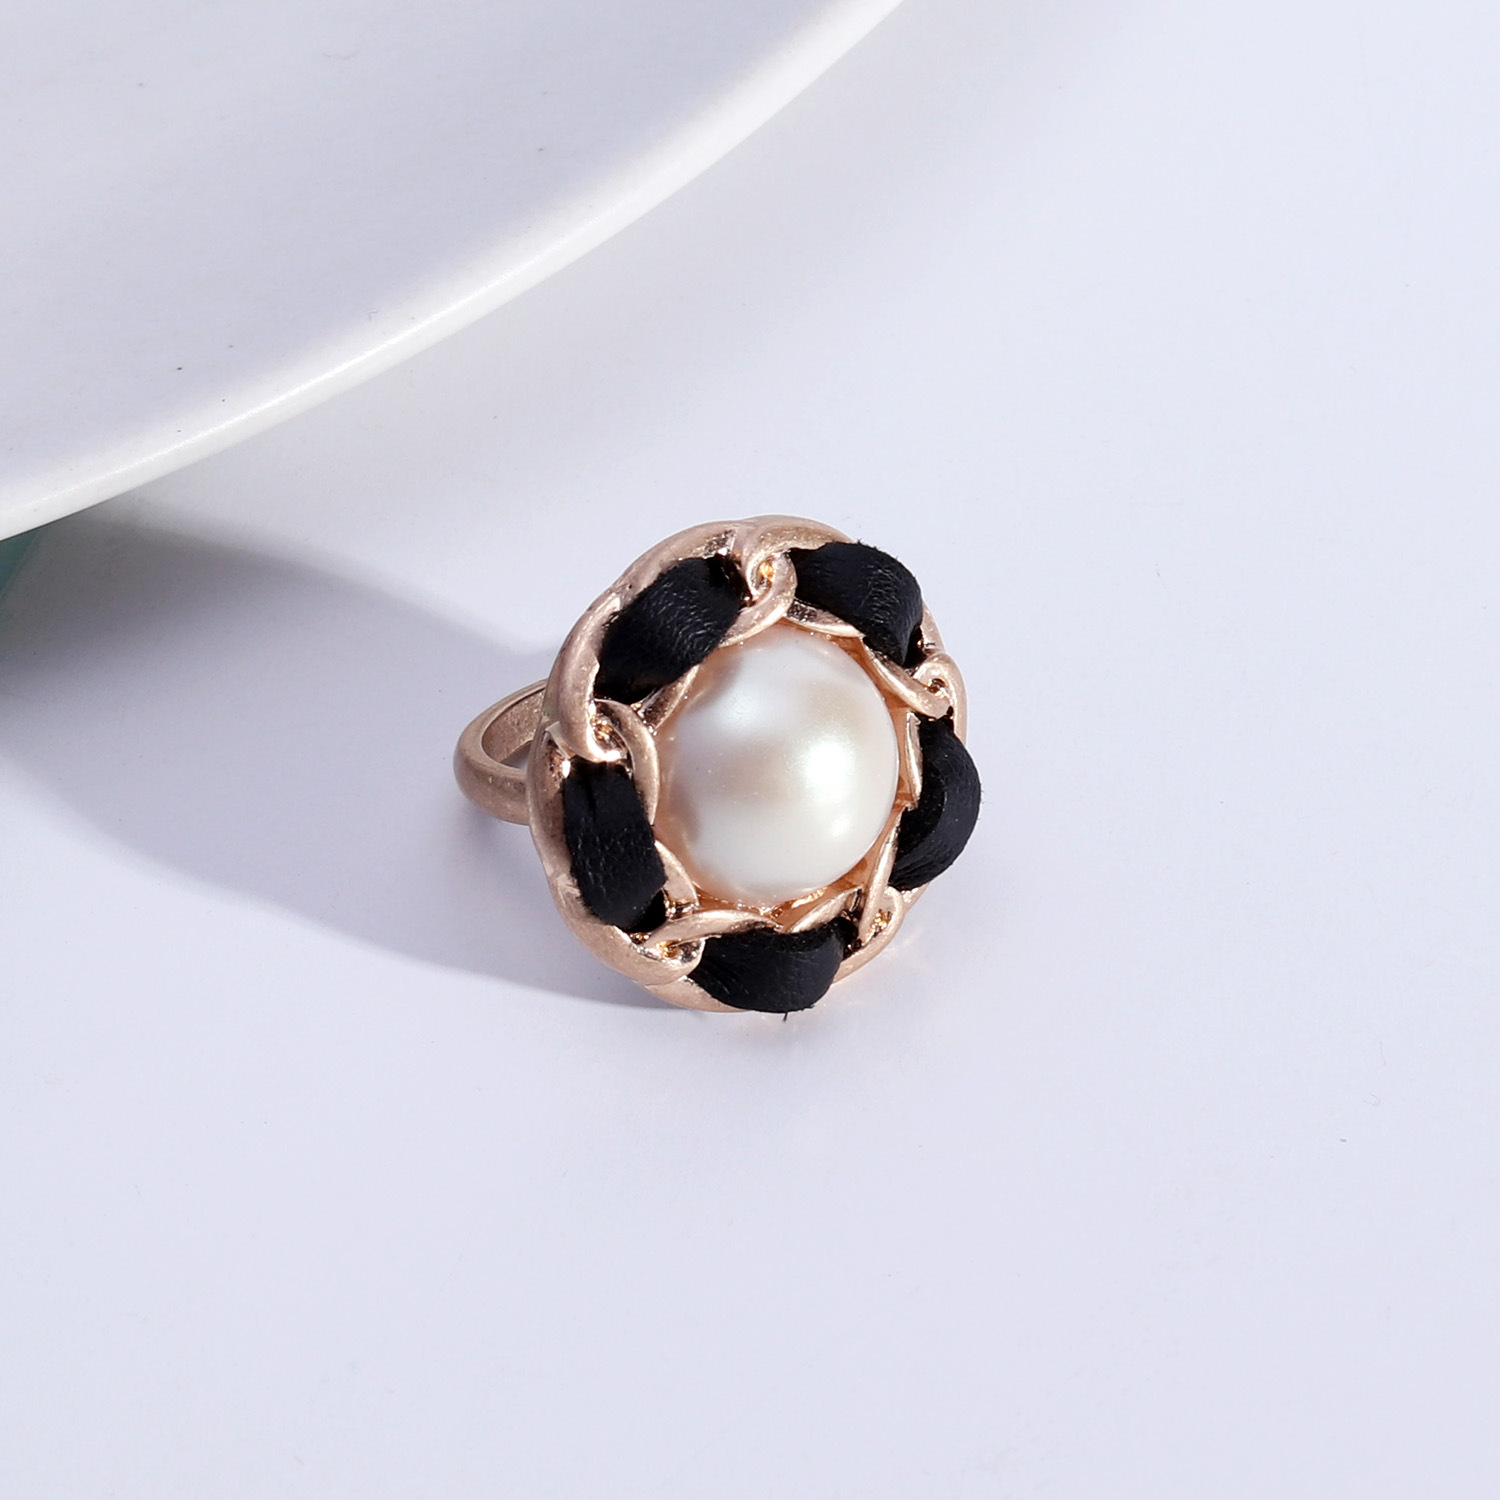 1:hvid perle